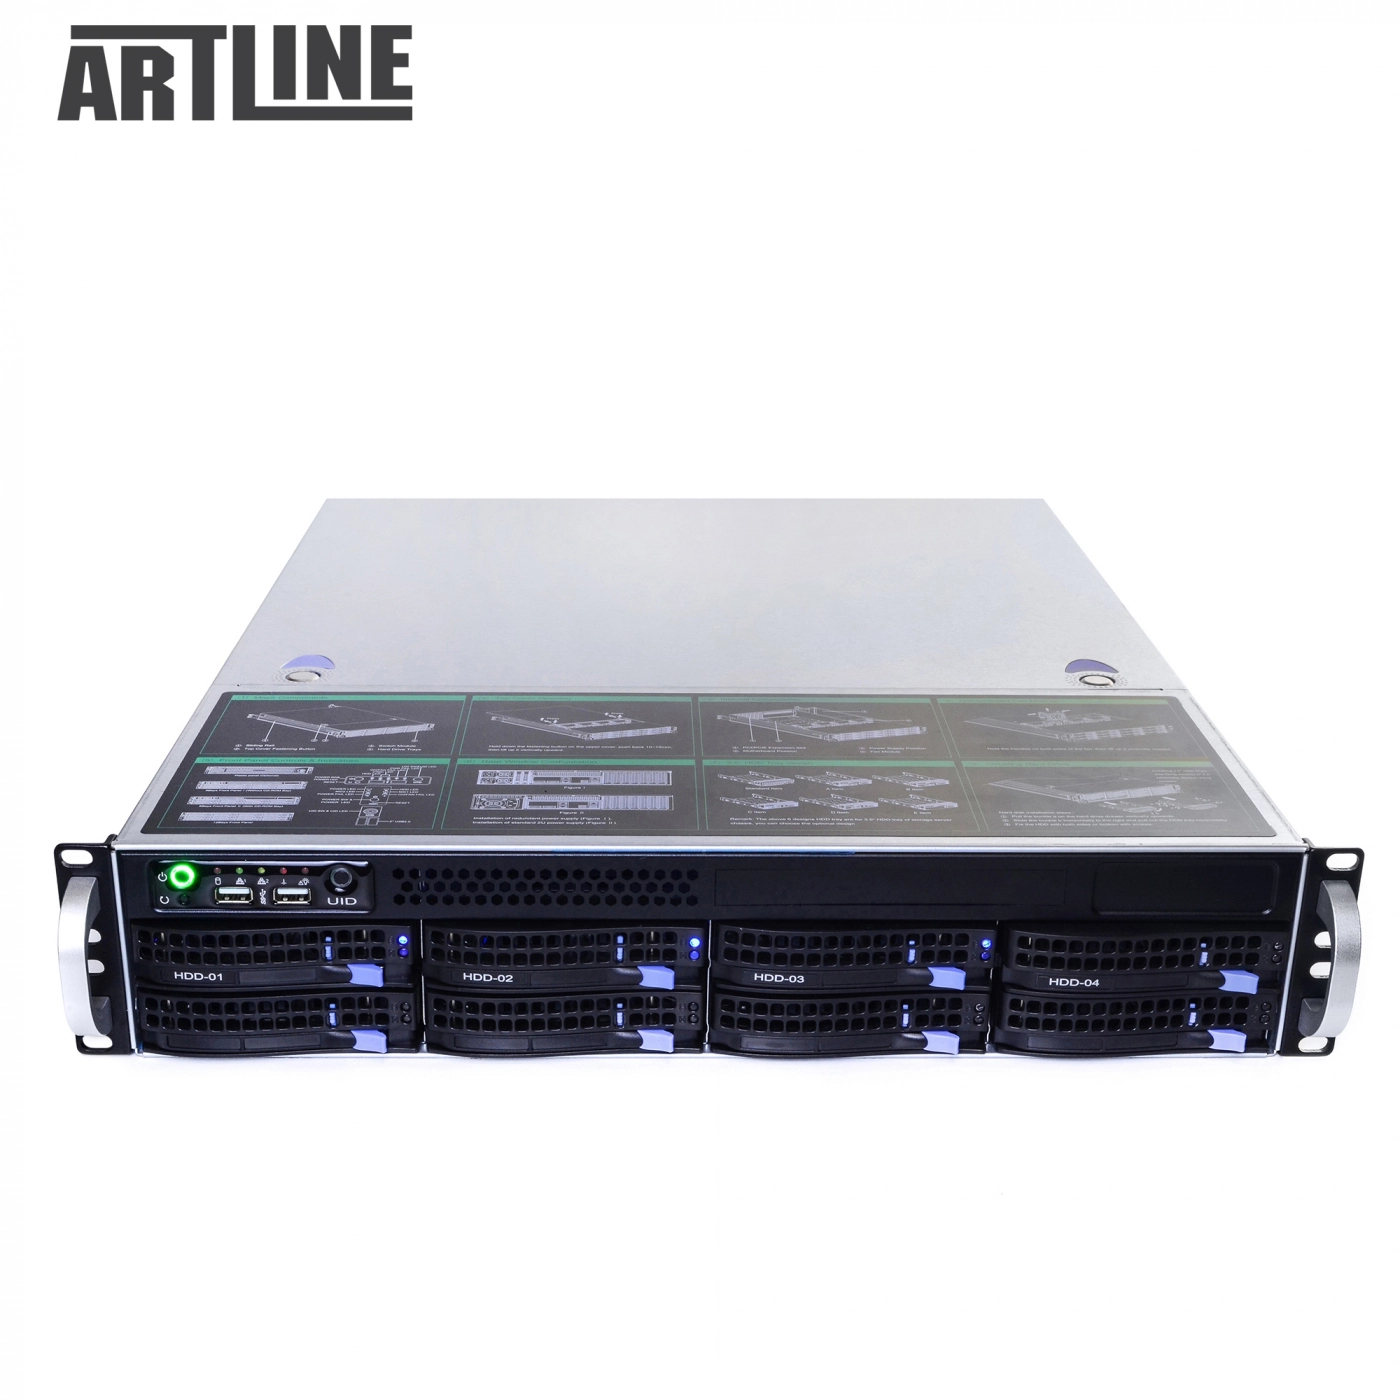 Купить Сервер ARTLINE Business R32v02 - фото 10